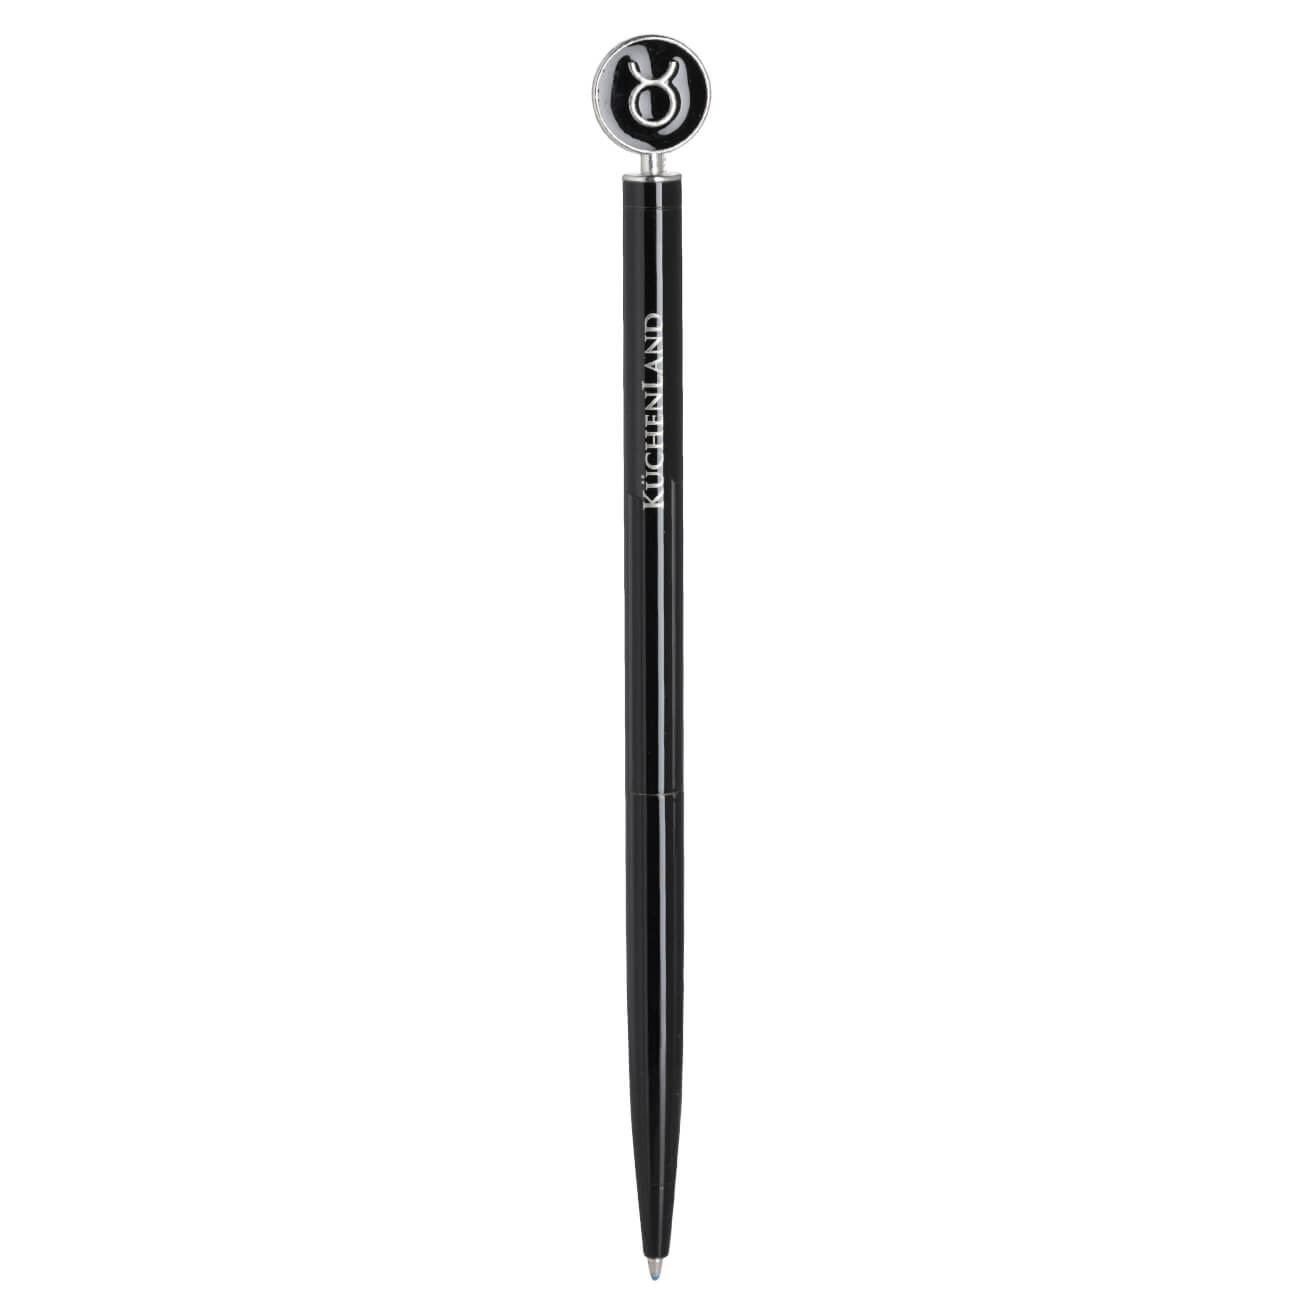 Ручка шариковая, 15 см, с фигуркой, сталь, черно-серебристая, Телец, Zodiac ручка подарочная